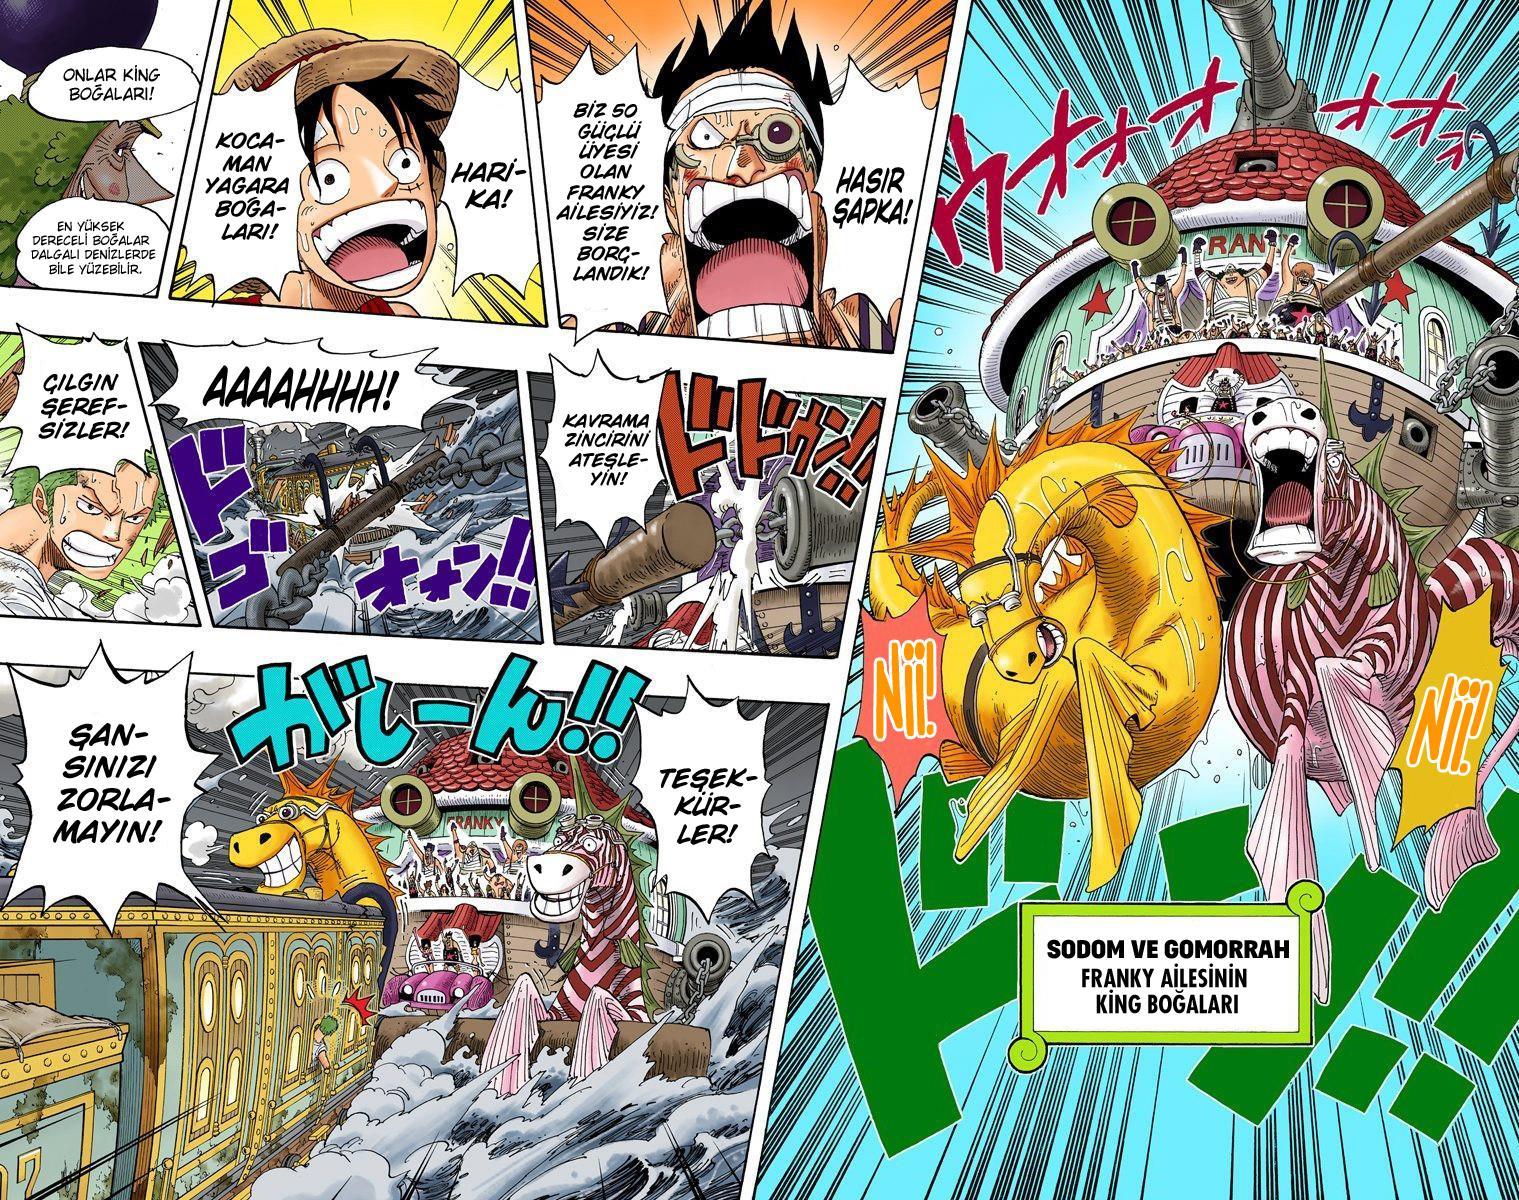 One Piece [Renkli] mangasının 0366 bölümünün 5. sayfasını okuyorsunuz.